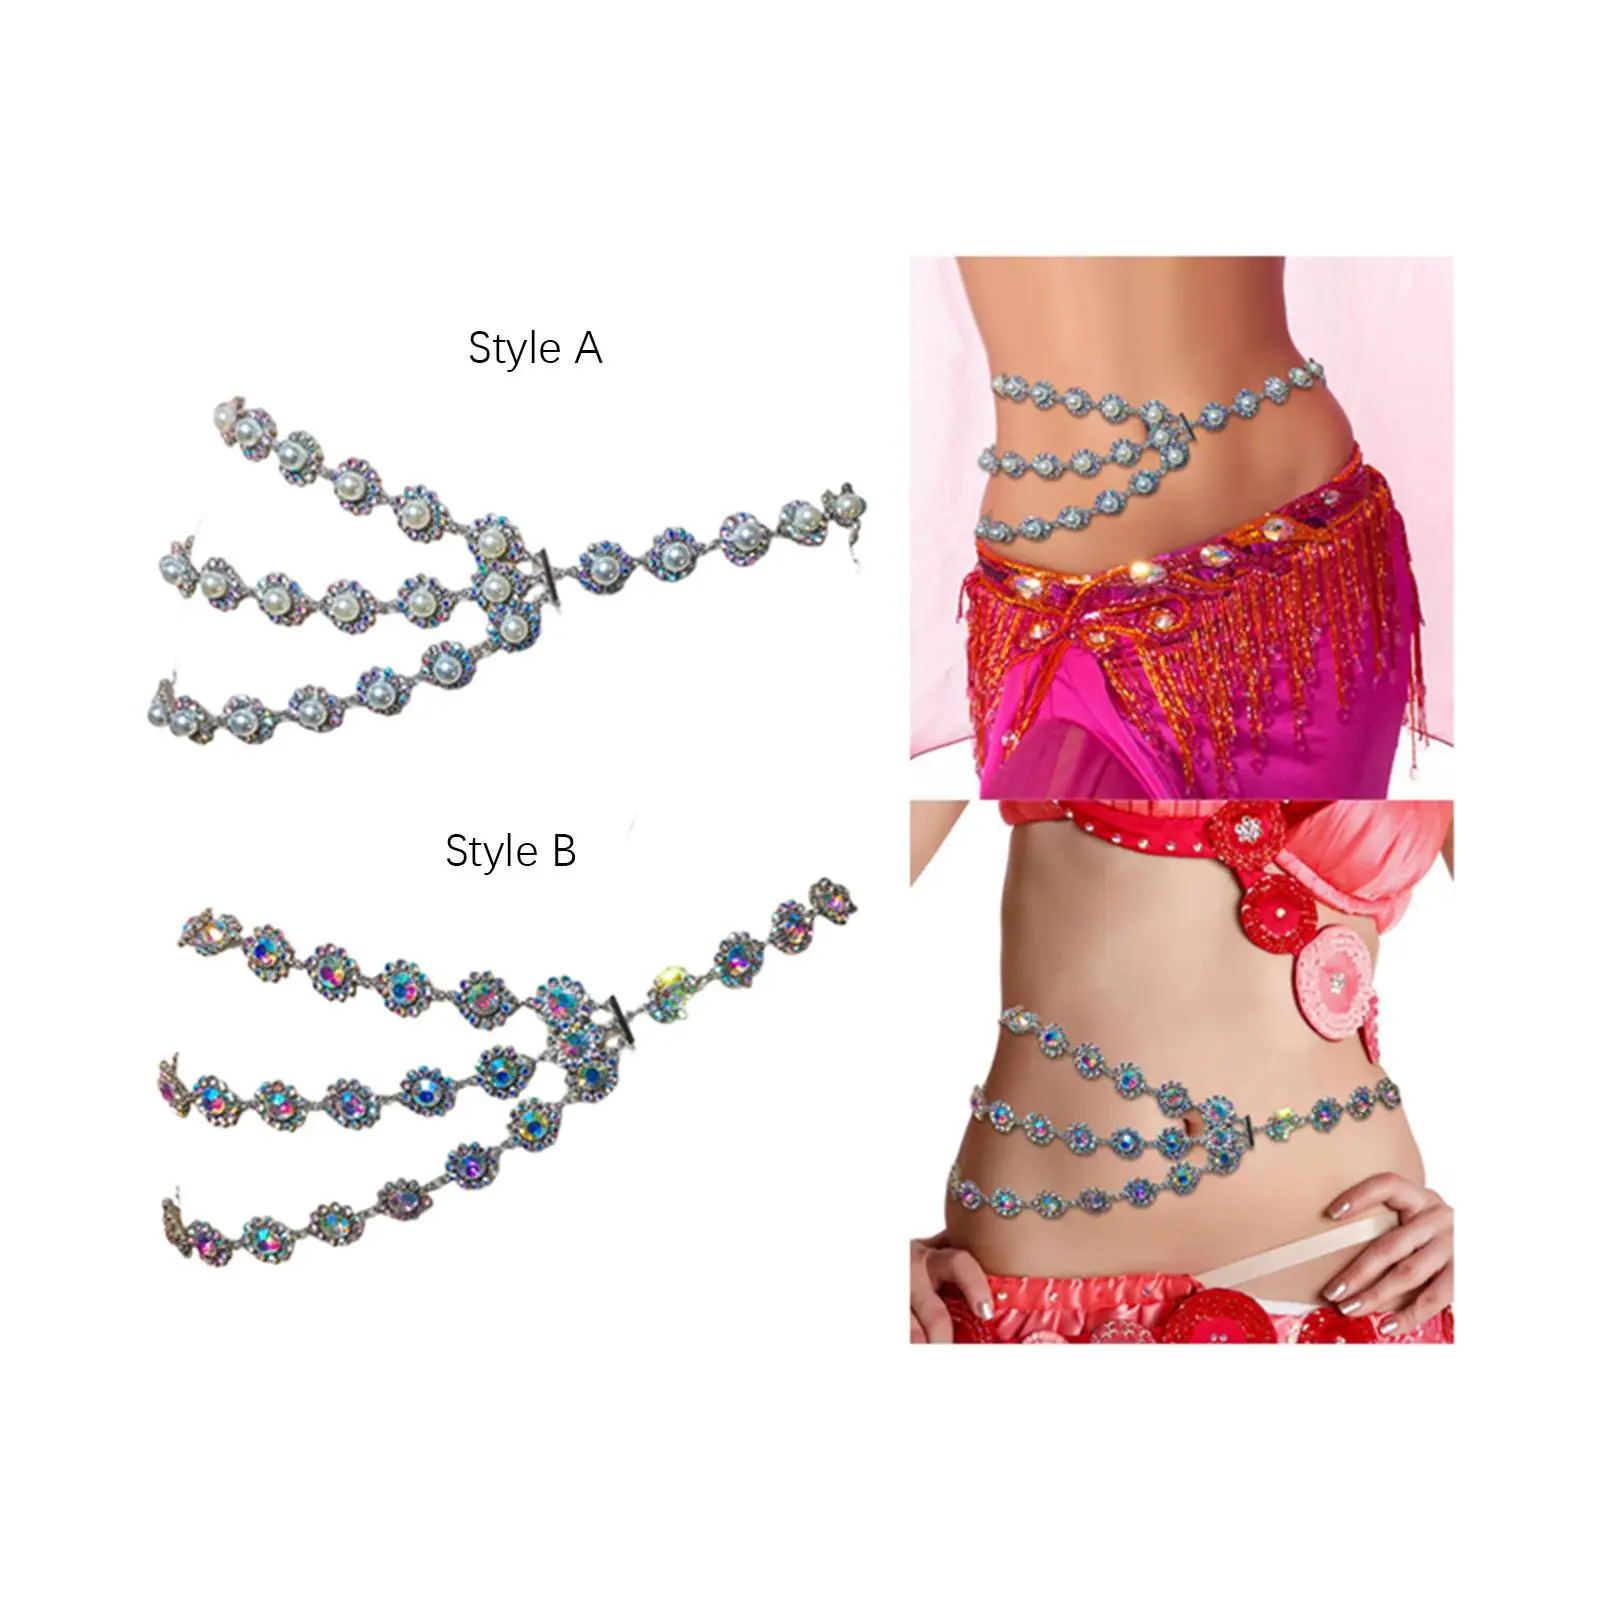 Waist Chain Belt Shiny Rhinestone Body Belly Chain for Party Bikinis Dress